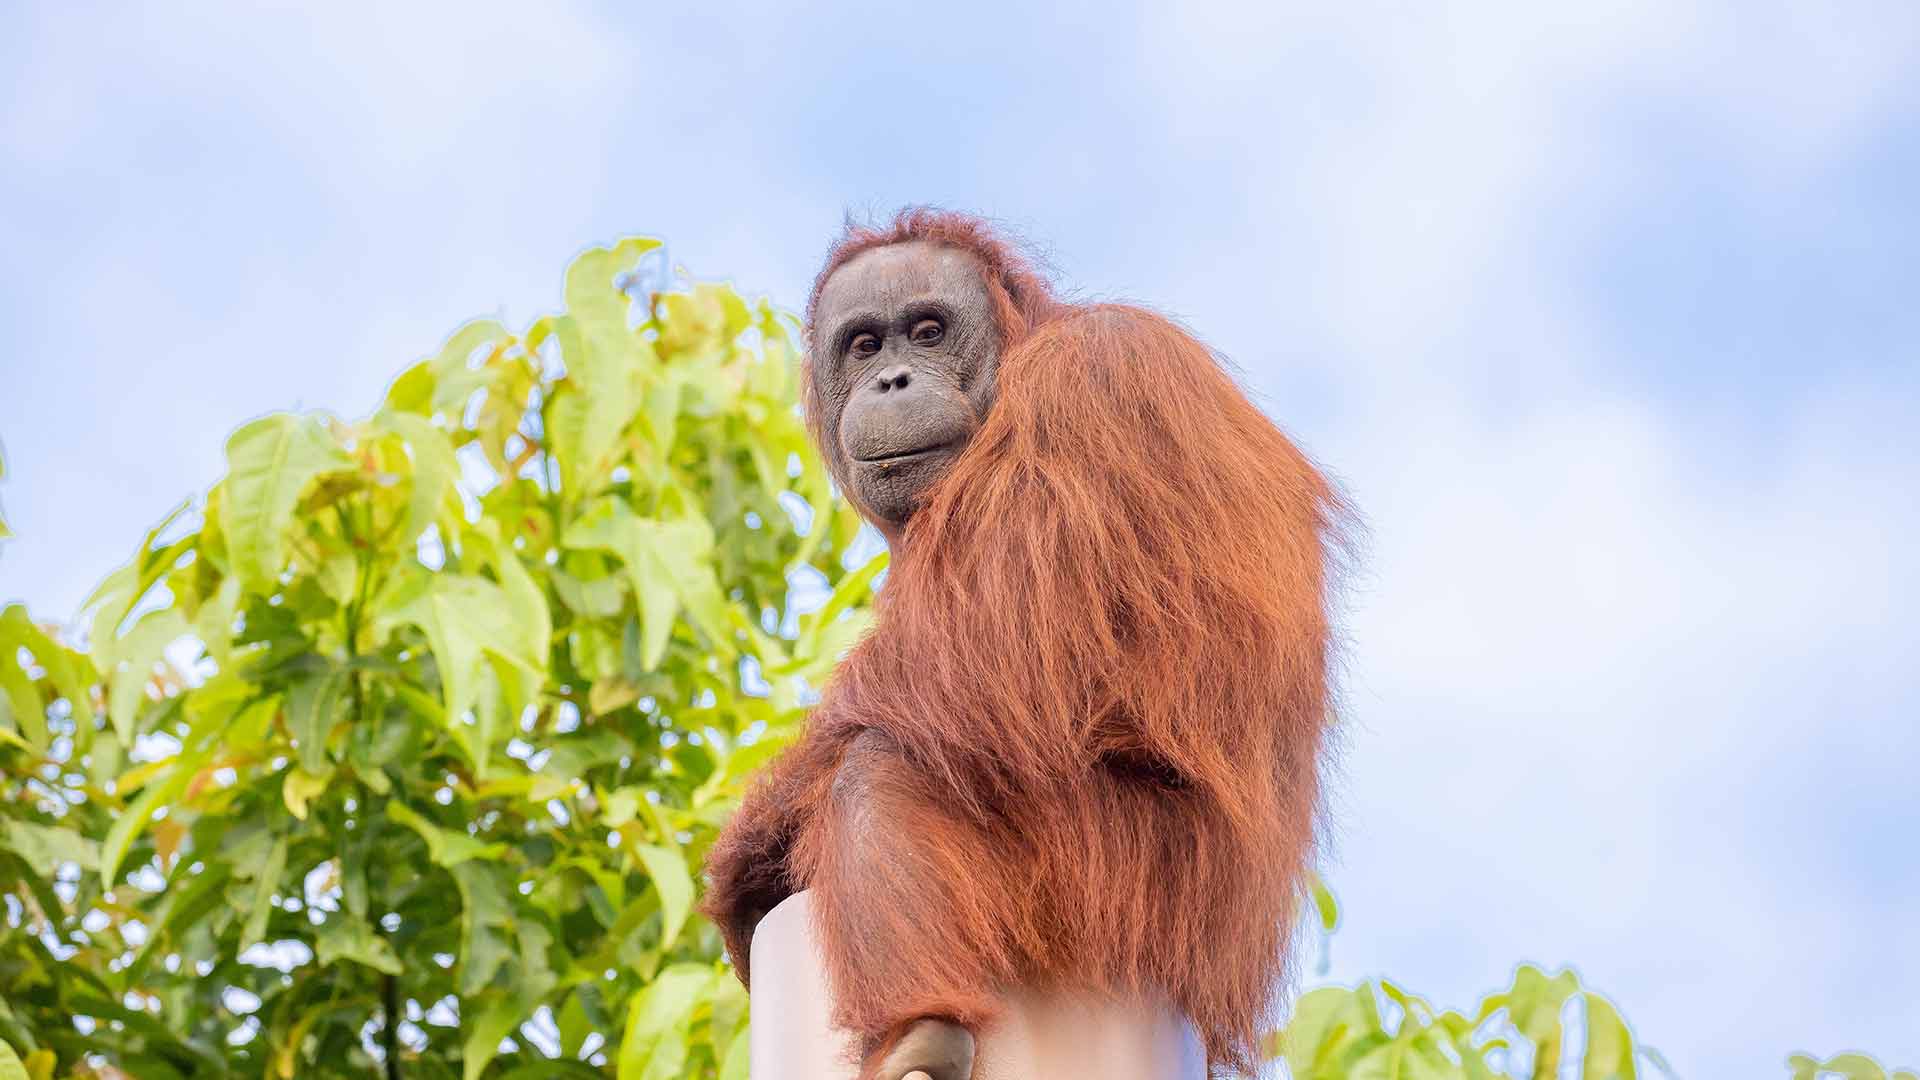 https://rfacdn.nz/zoo/assets/media/wanita-orangutan-sea-animal-page.jpg